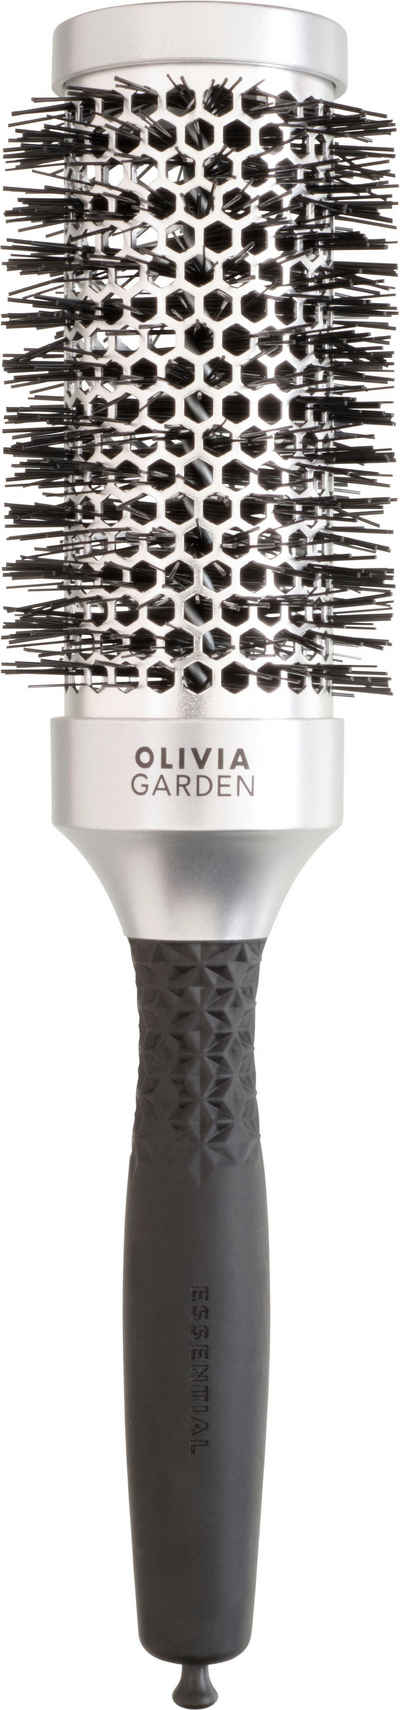 OLIVIA GARDEN Rundbürste ESSENTIAL BLOWOUT CLASSIC Silver